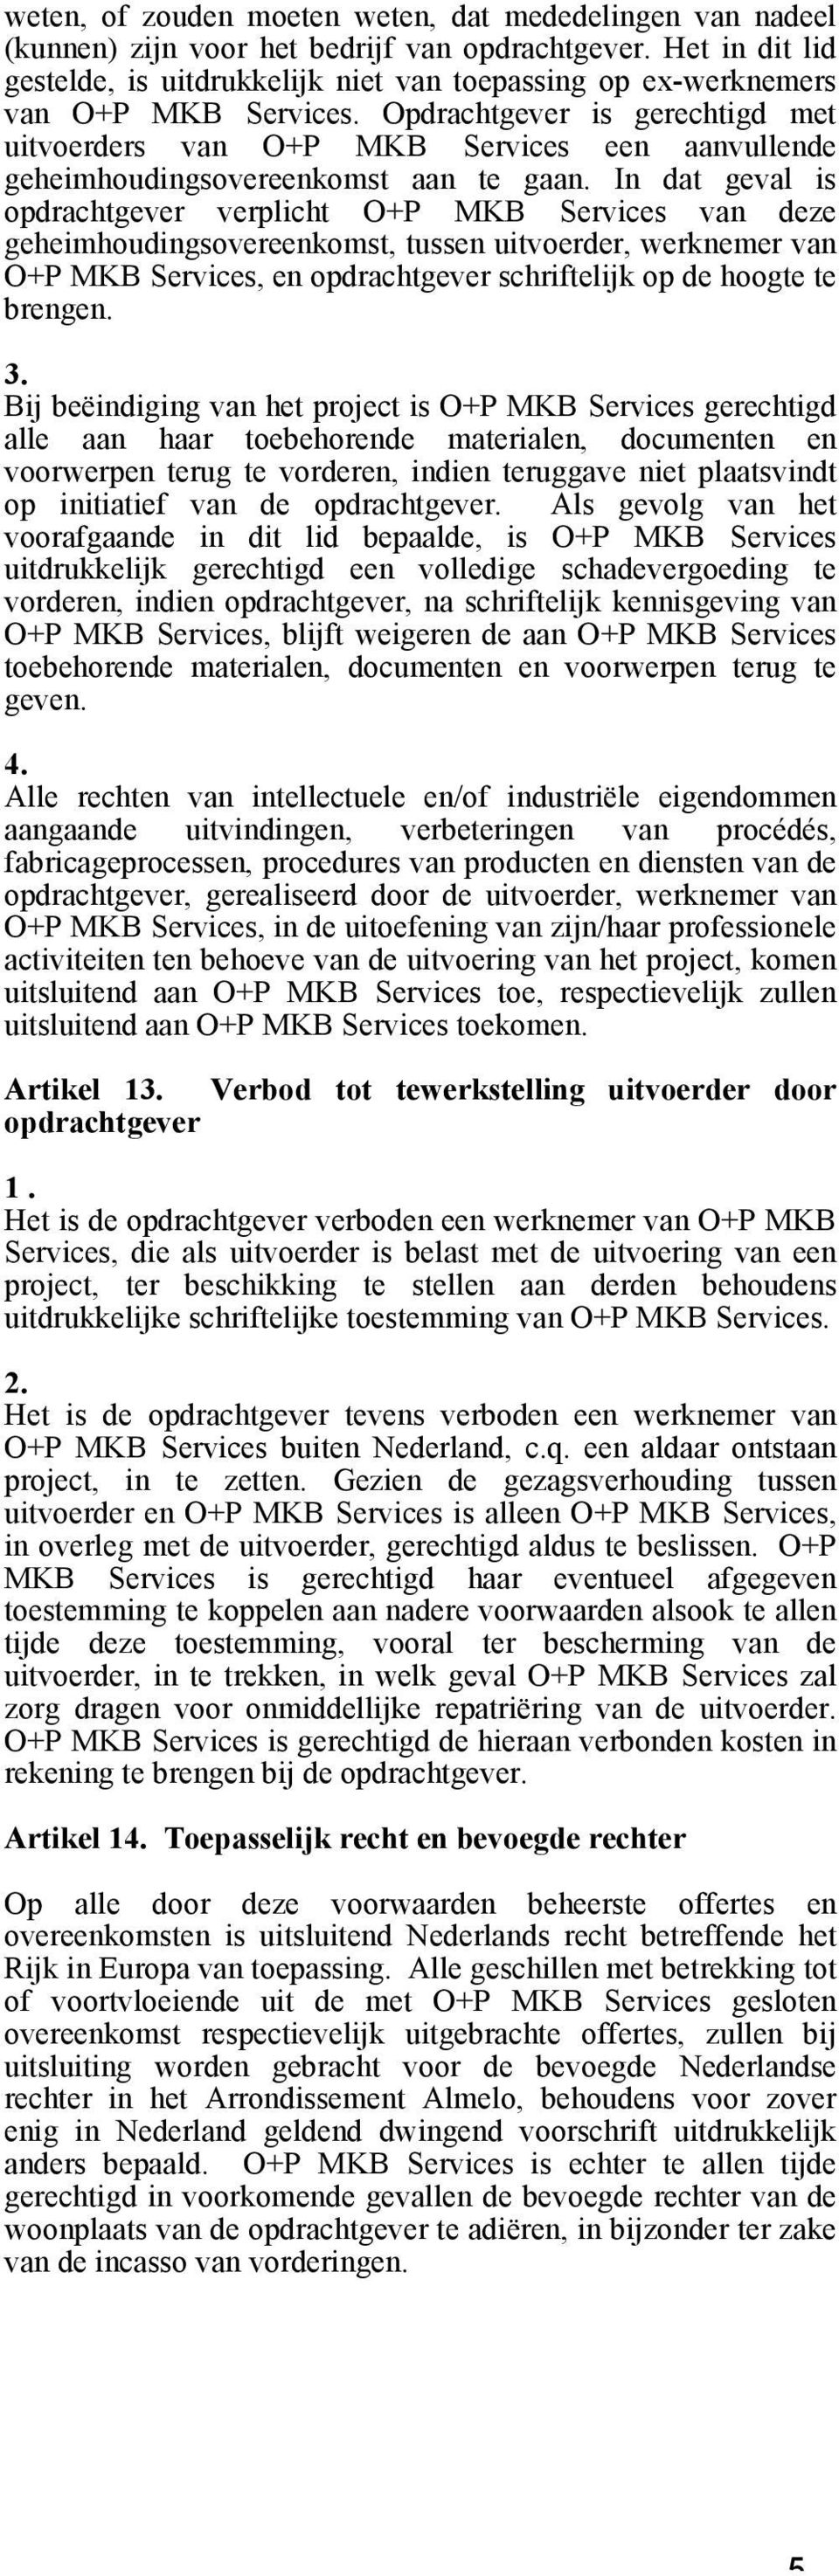 Opdrachtgever is gerechtigd met uitvoerders van O+P MKB Services een aanvullende geheimhoudingsovereenkomst aan te gaan.